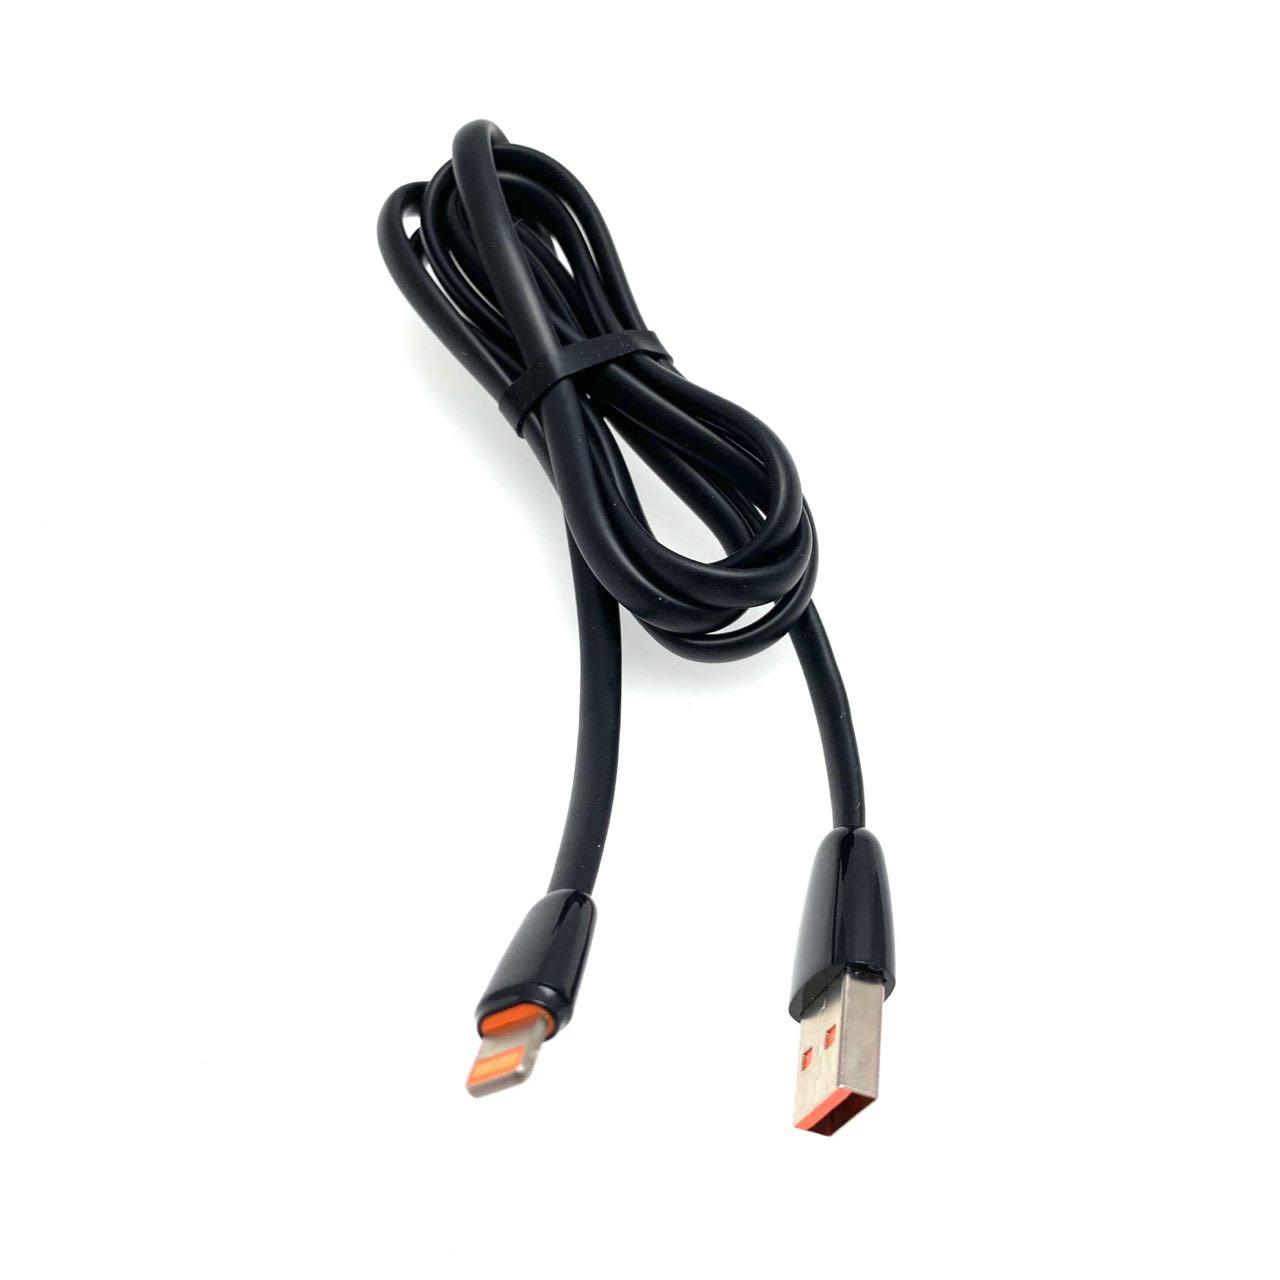 USB Дата-кабель "G01" APPLE Lightning 8-pin силиконовый эластичный, морозоустойчивый, длина 1 метр, плоский чёрного цвета, оранжевые контакты.